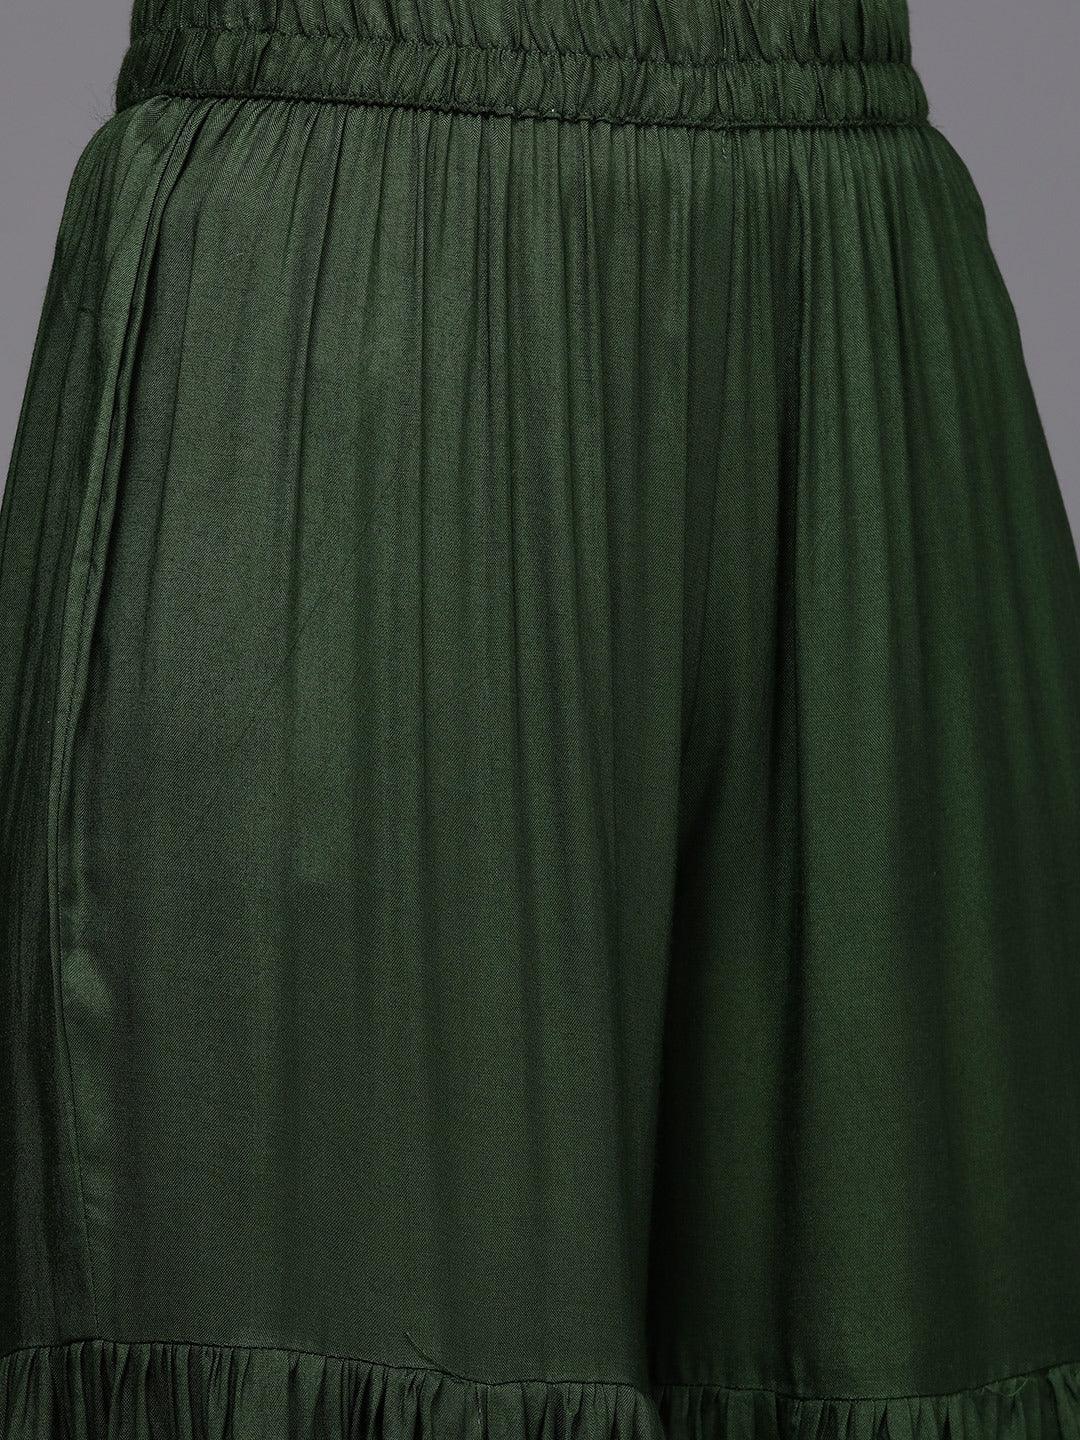 Green Brocade Silk Blend A-Line Suit Set - Libas